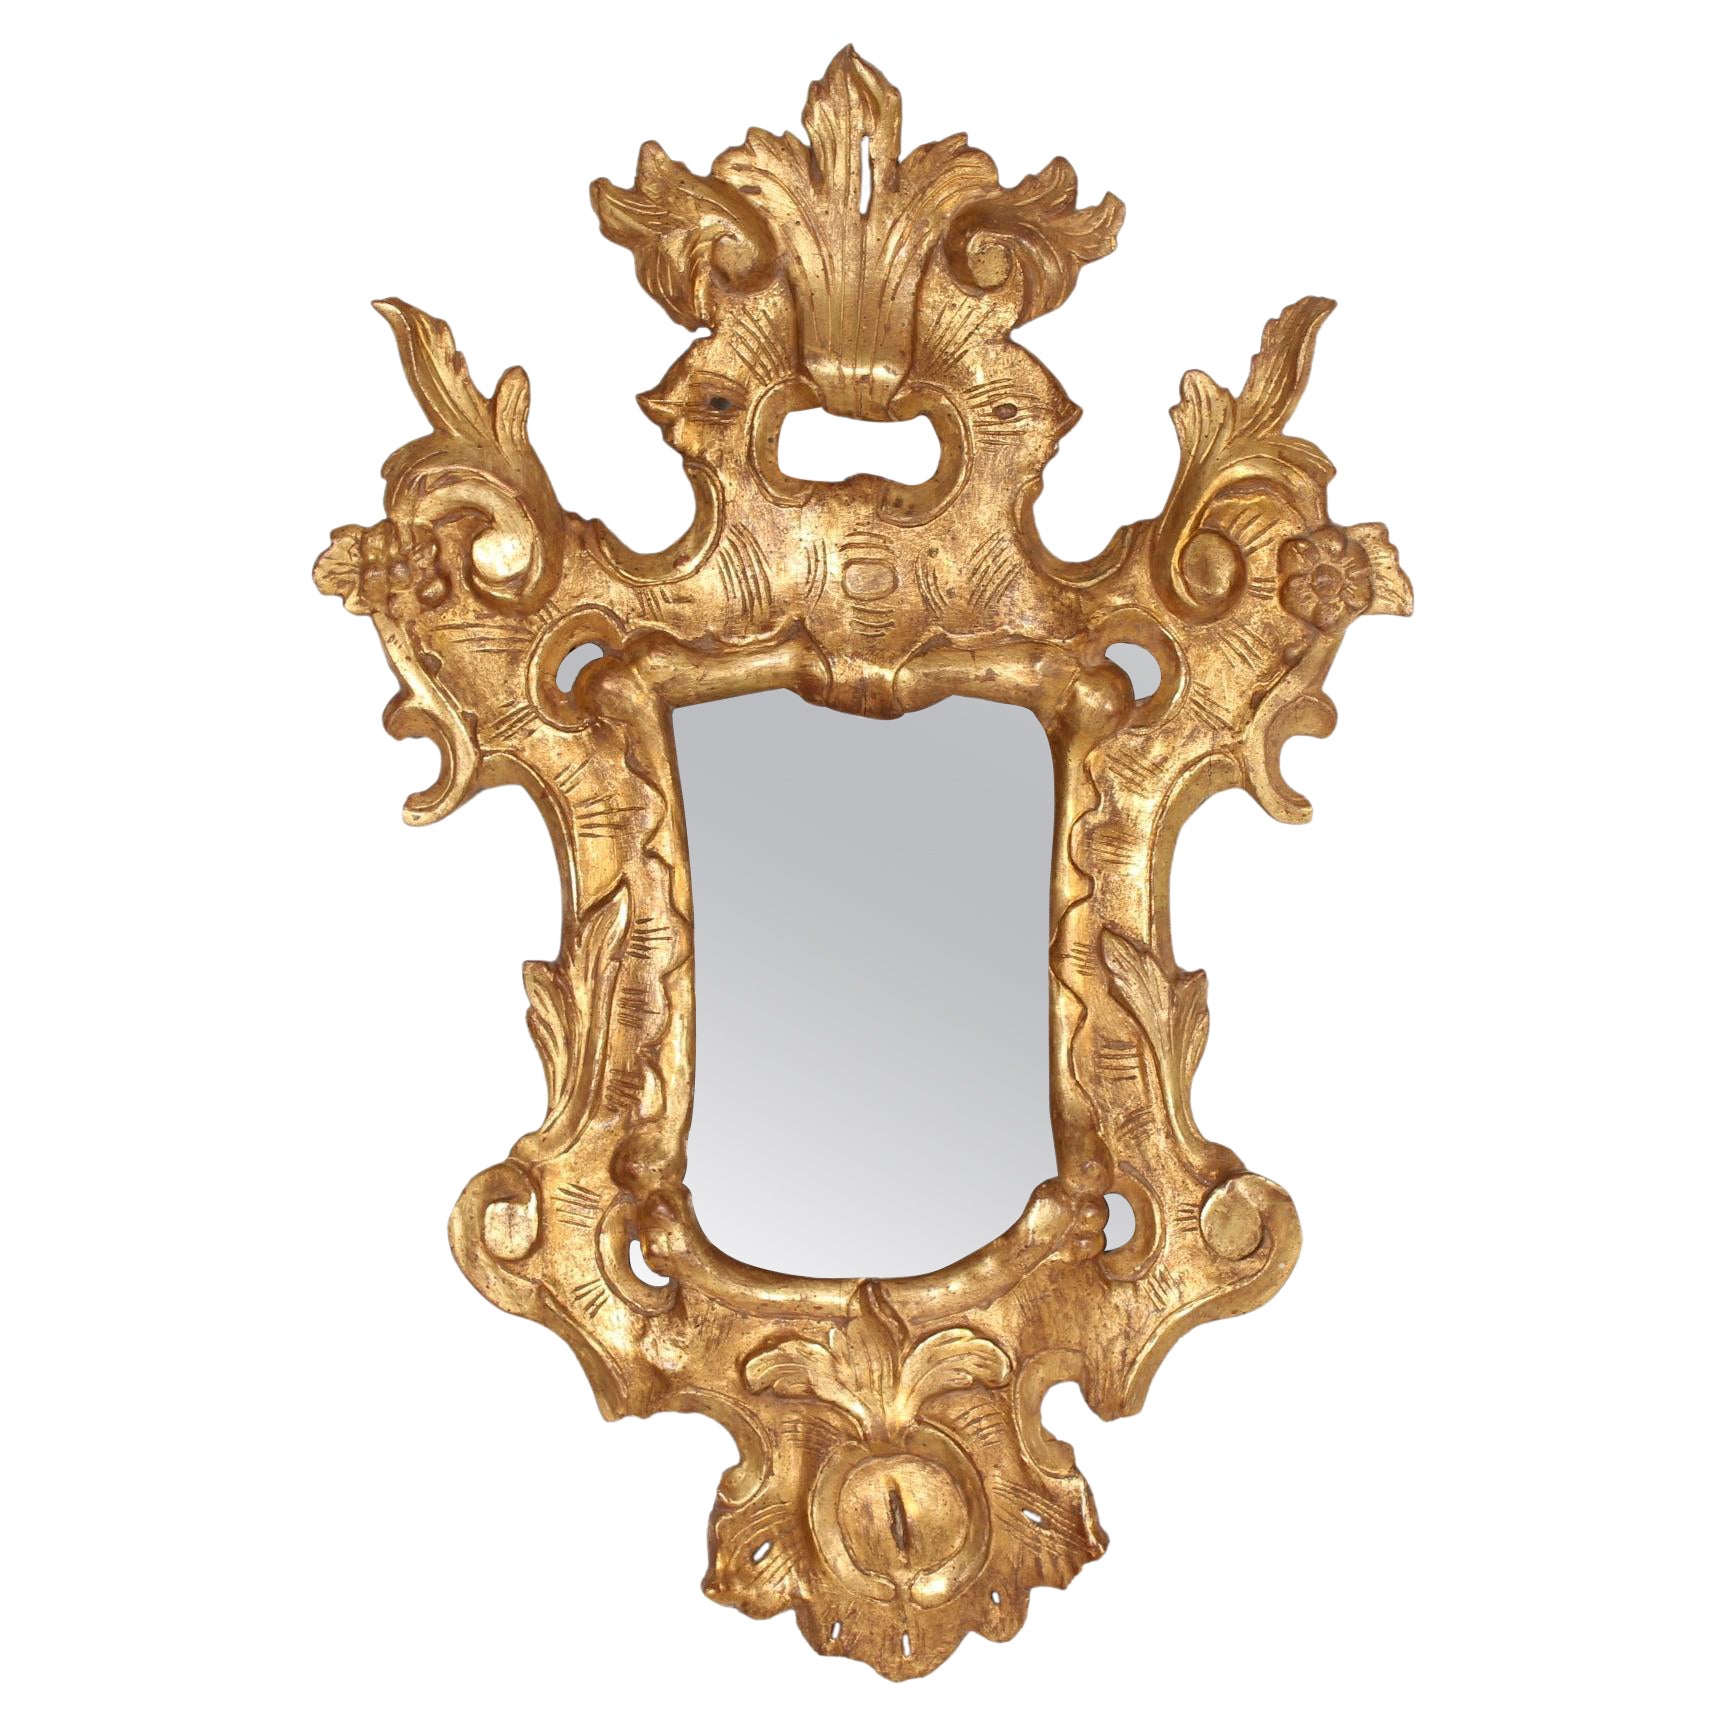 Miroir européen rococo en bois doré avec ornements ajourés + Vieux miroir en verre des années 1800